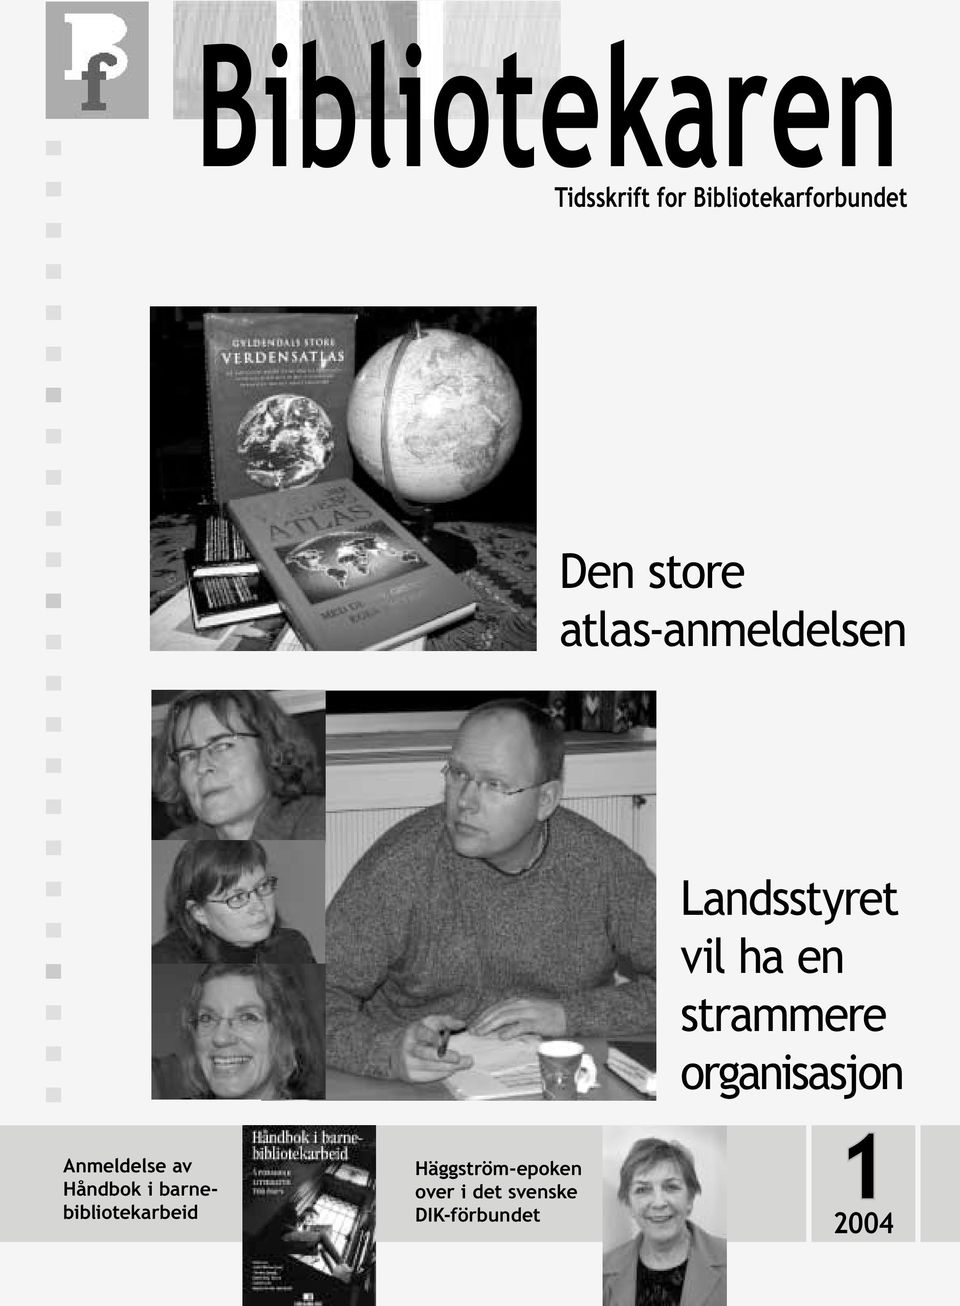 Anmeldelse av Håndbok i barnebibliotekarbeid Häggström-epoken